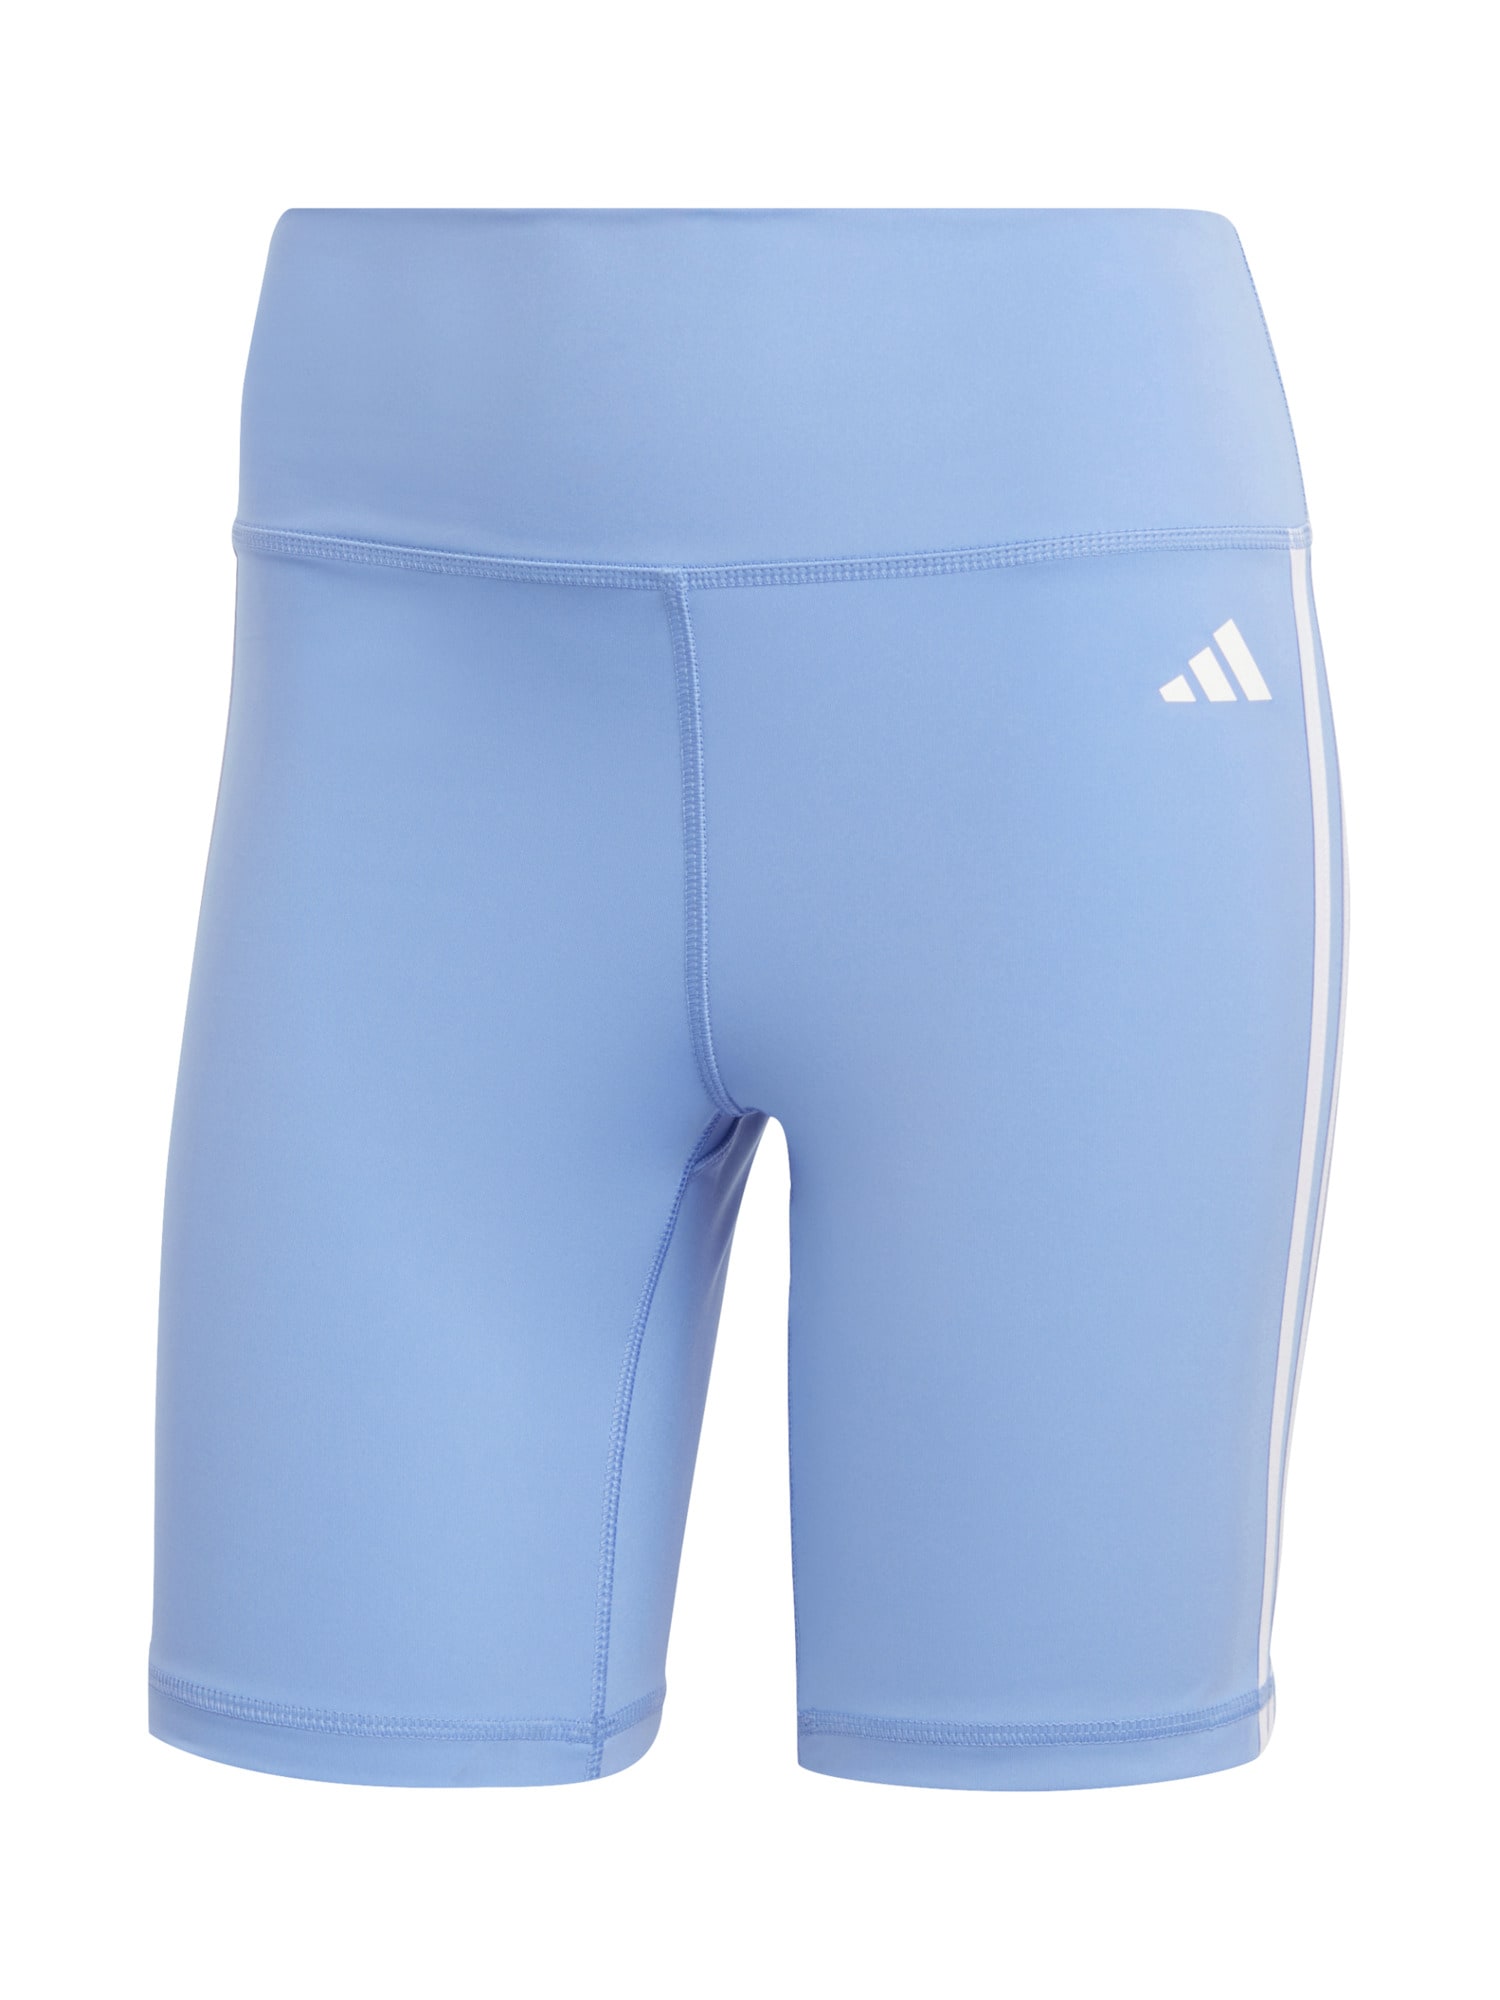 ADIDAS PERFORMANCE Sportinės kelnės 'Essentials' šviesiai mėlyna / balta